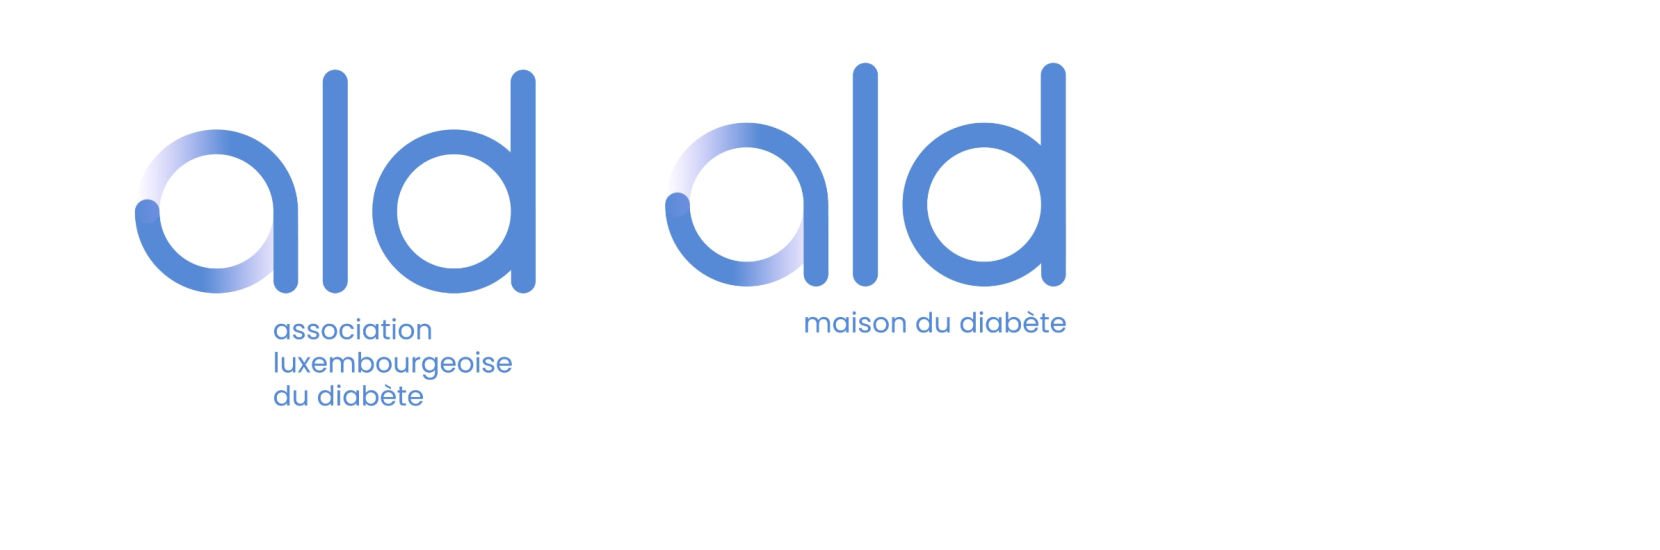 Association Luxembourgeoise du Diabète (ALD) et la Maison du Diabète